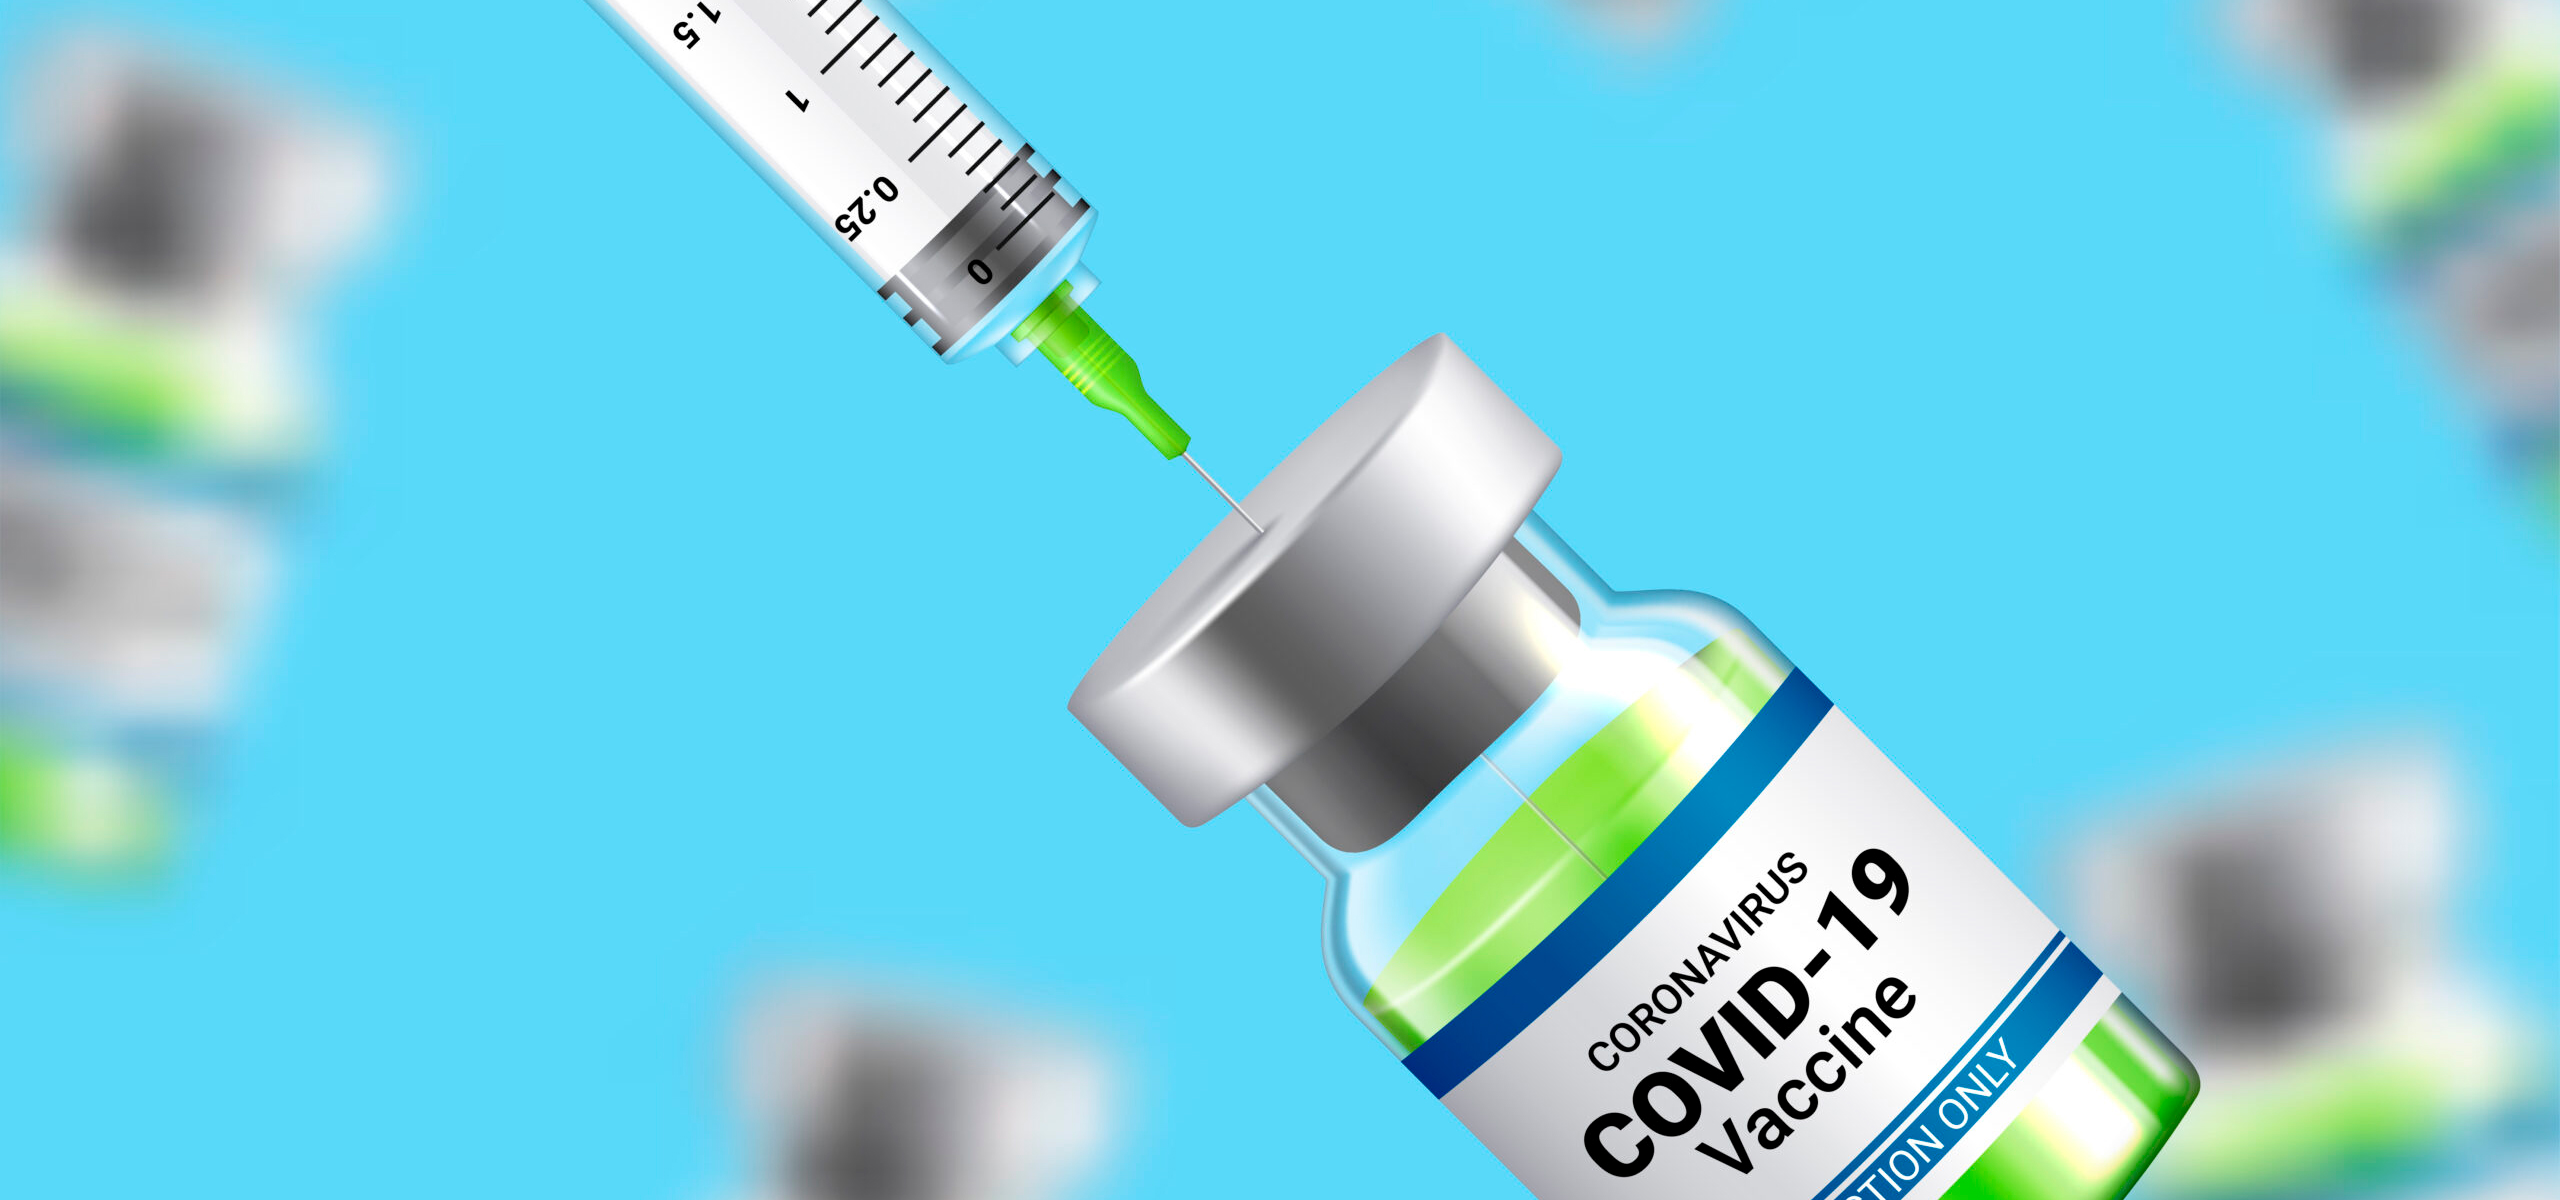 Vacinas contra covid-19 reduzem hospitalizações em 80%, diz agência do governo britânico